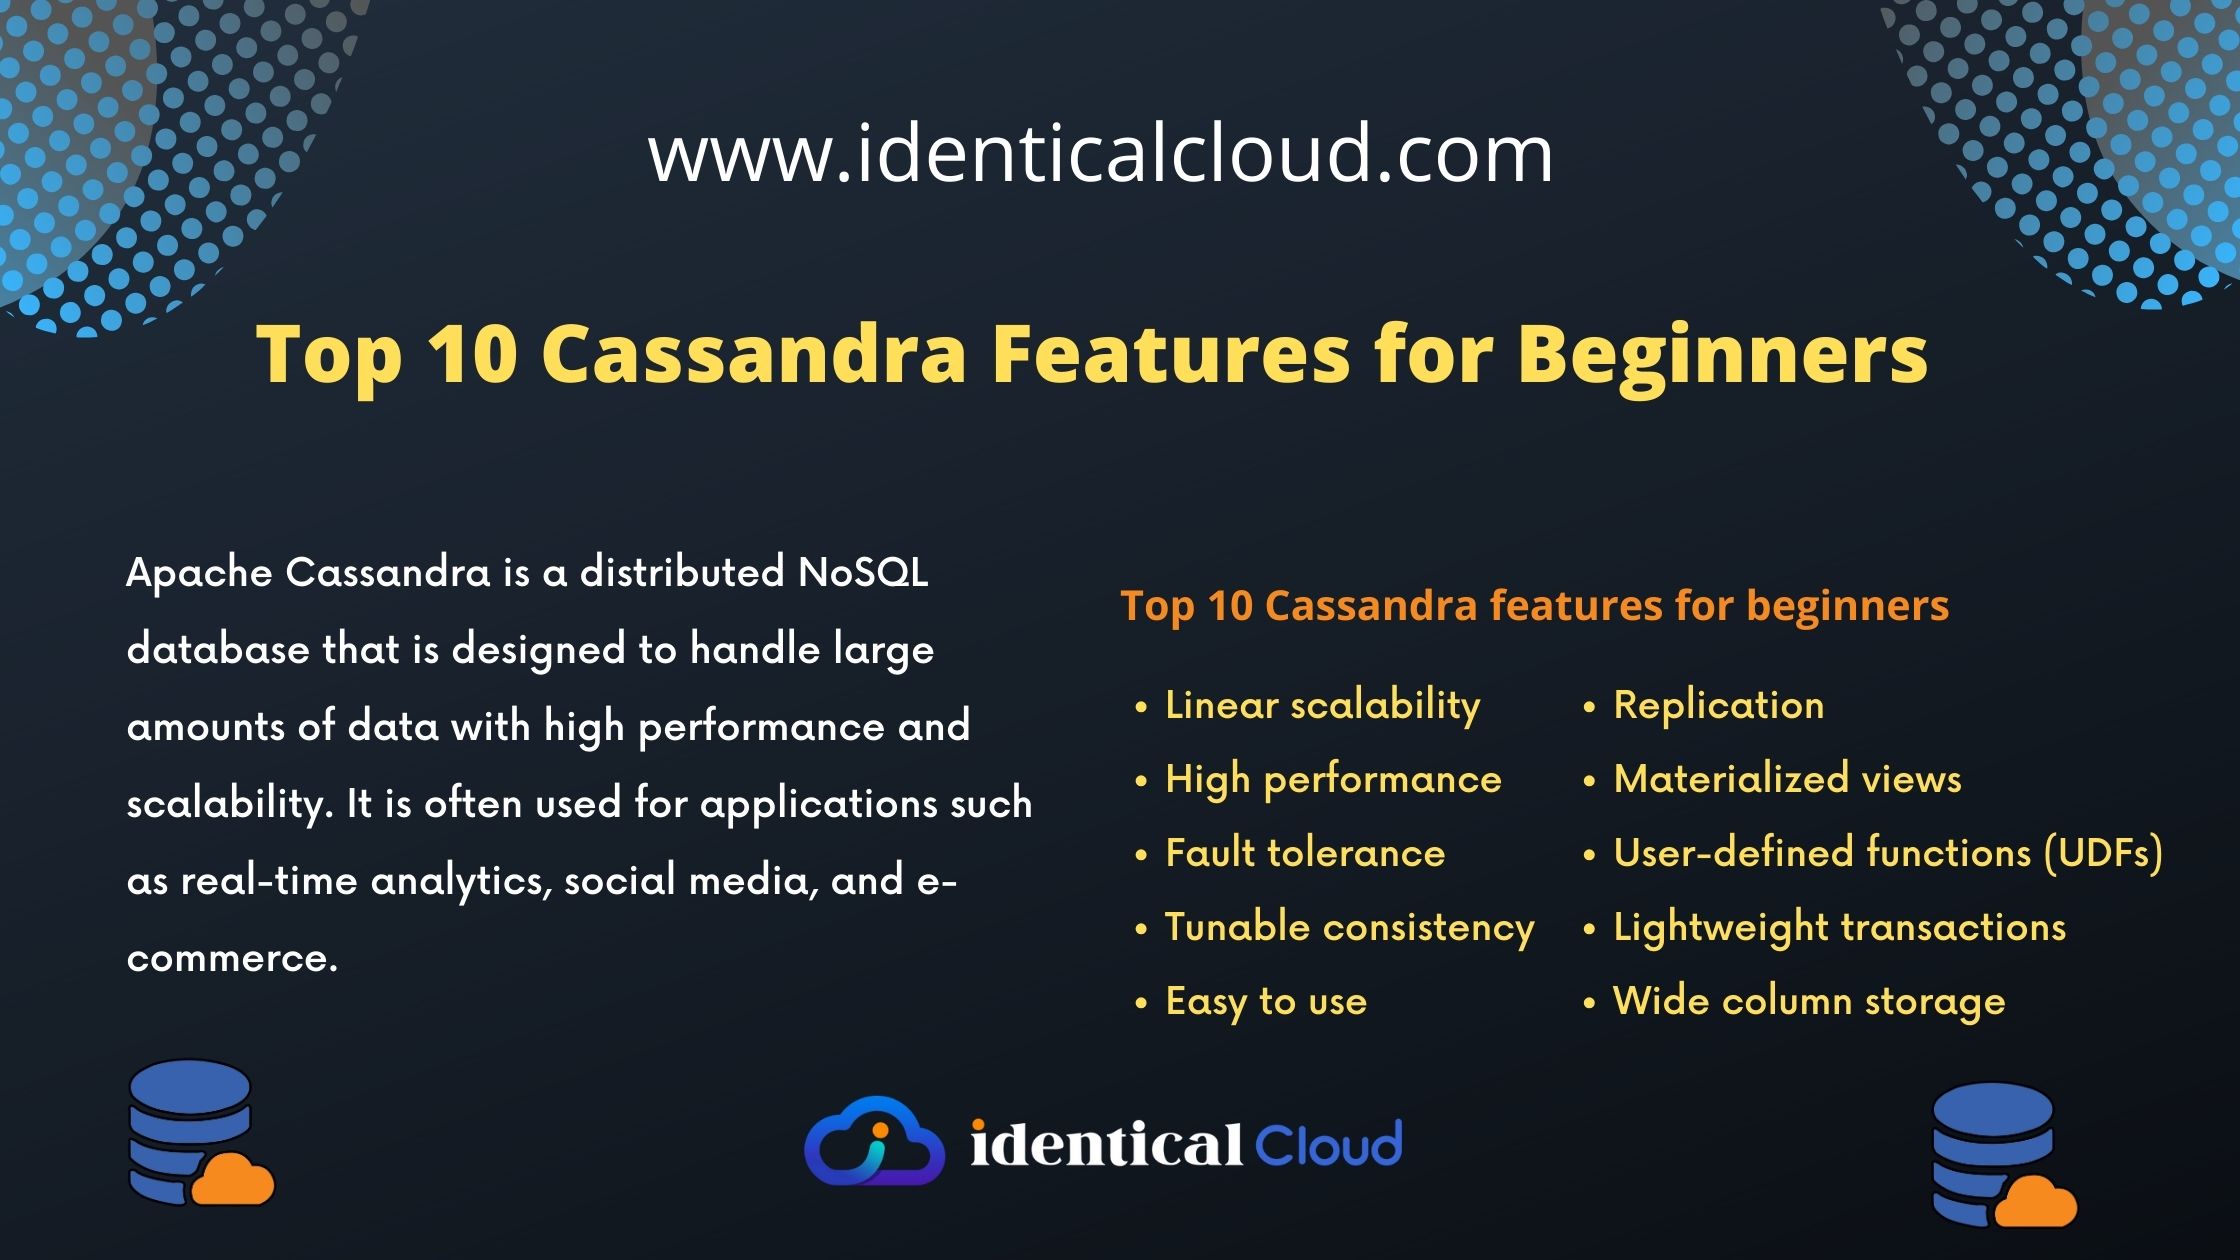 Top 10 Cassandra Features for Beginners - identicalcloud.com